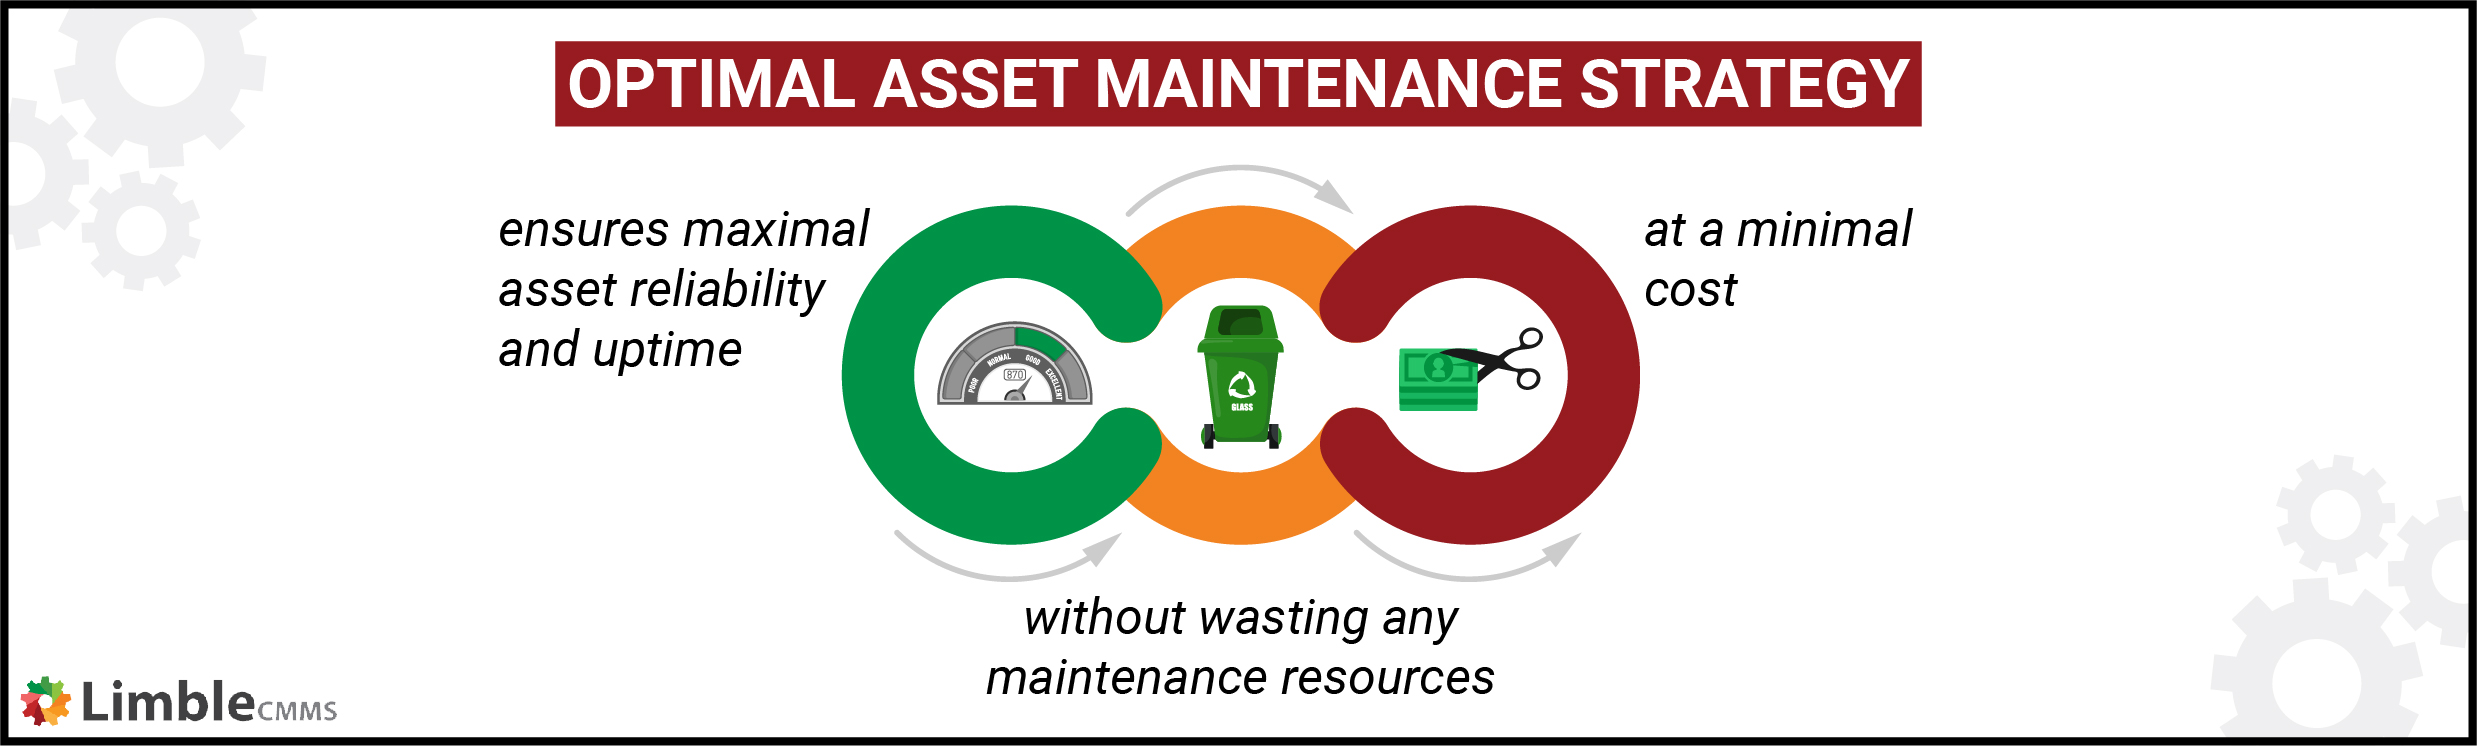 an optimal asset maintenance strategy